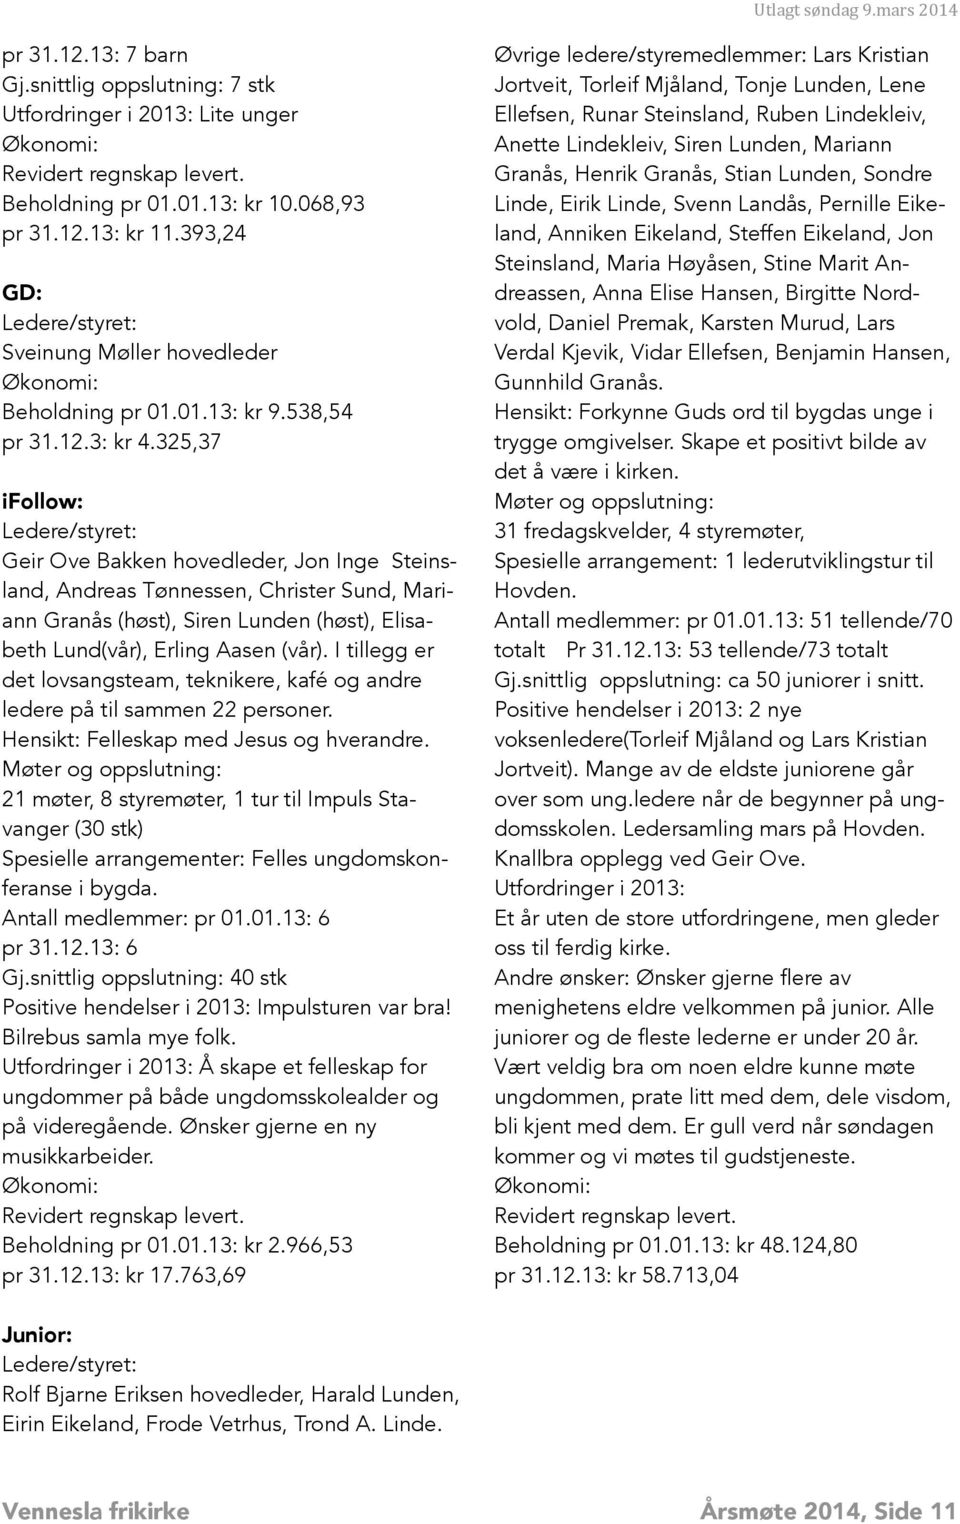 325,37 ifollow: Geir Ove Bakken hovedleder, Jon Inge Steinsland, Andreas Tønnessen, Christer Sund, Mariann Granås (høst), Siren Lunden (høst), Elisabeth Lund(vår), Erling Aasen (vår).